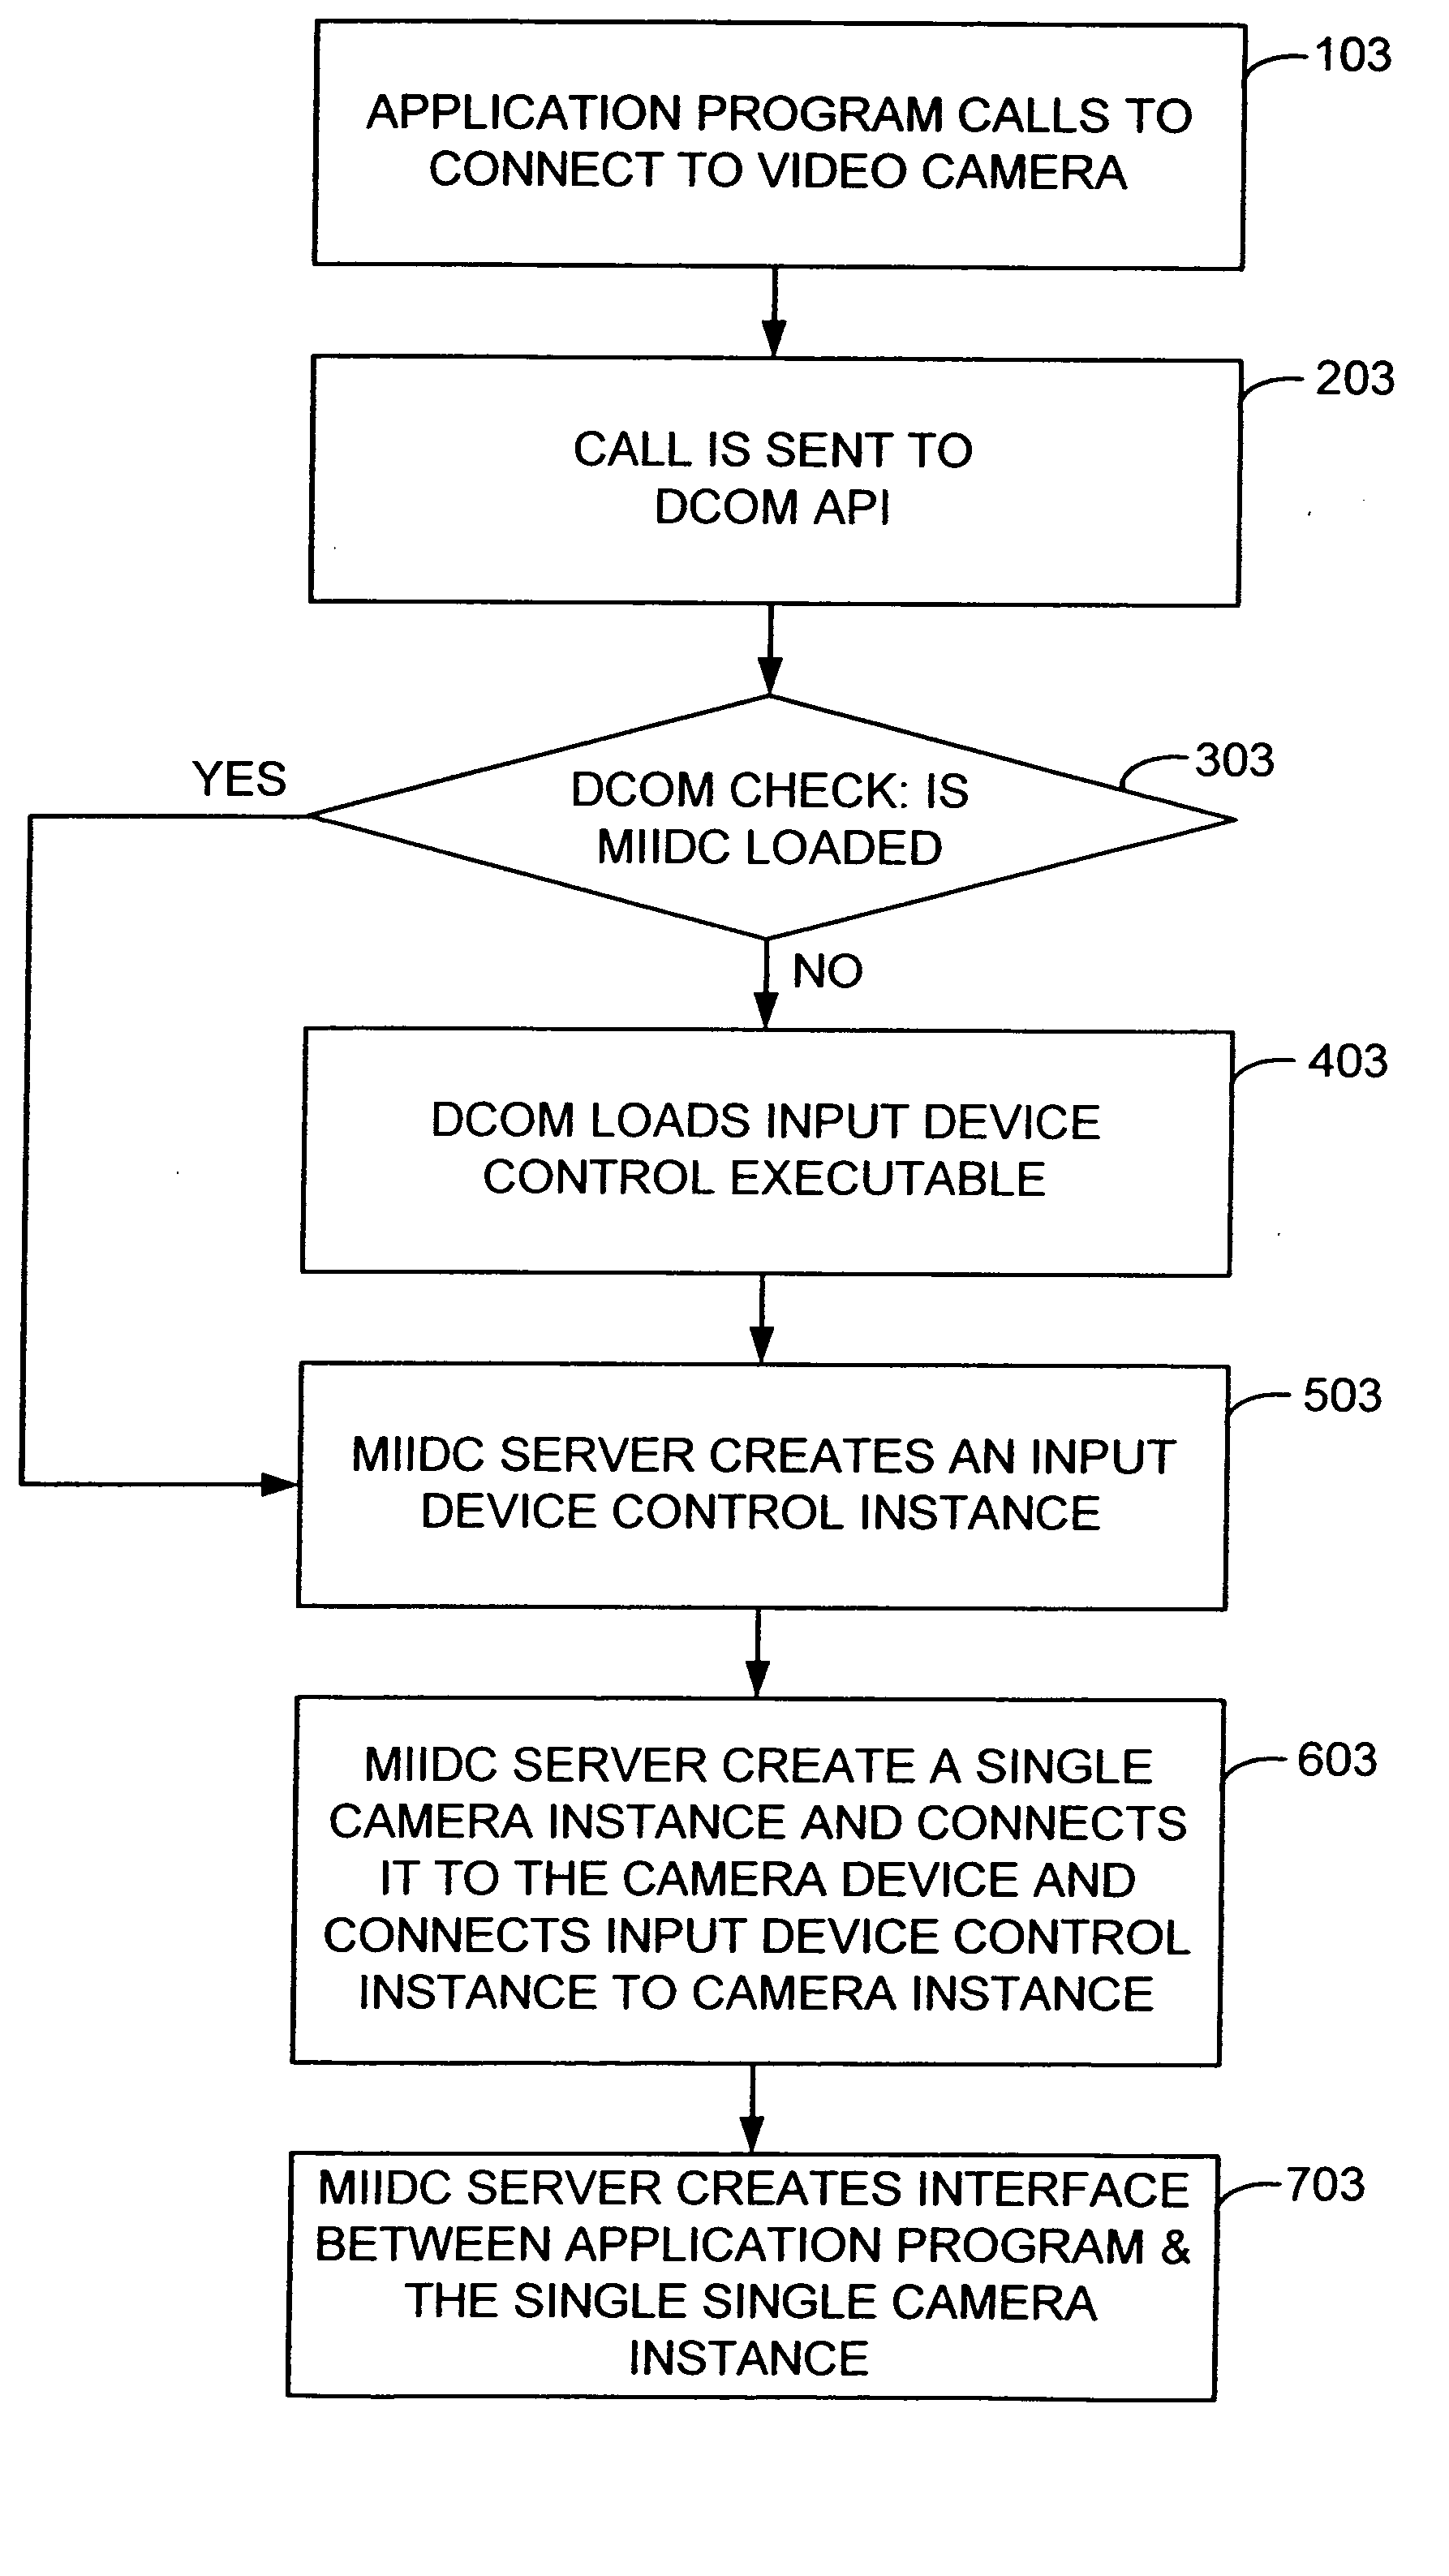 Multi-instance input device control